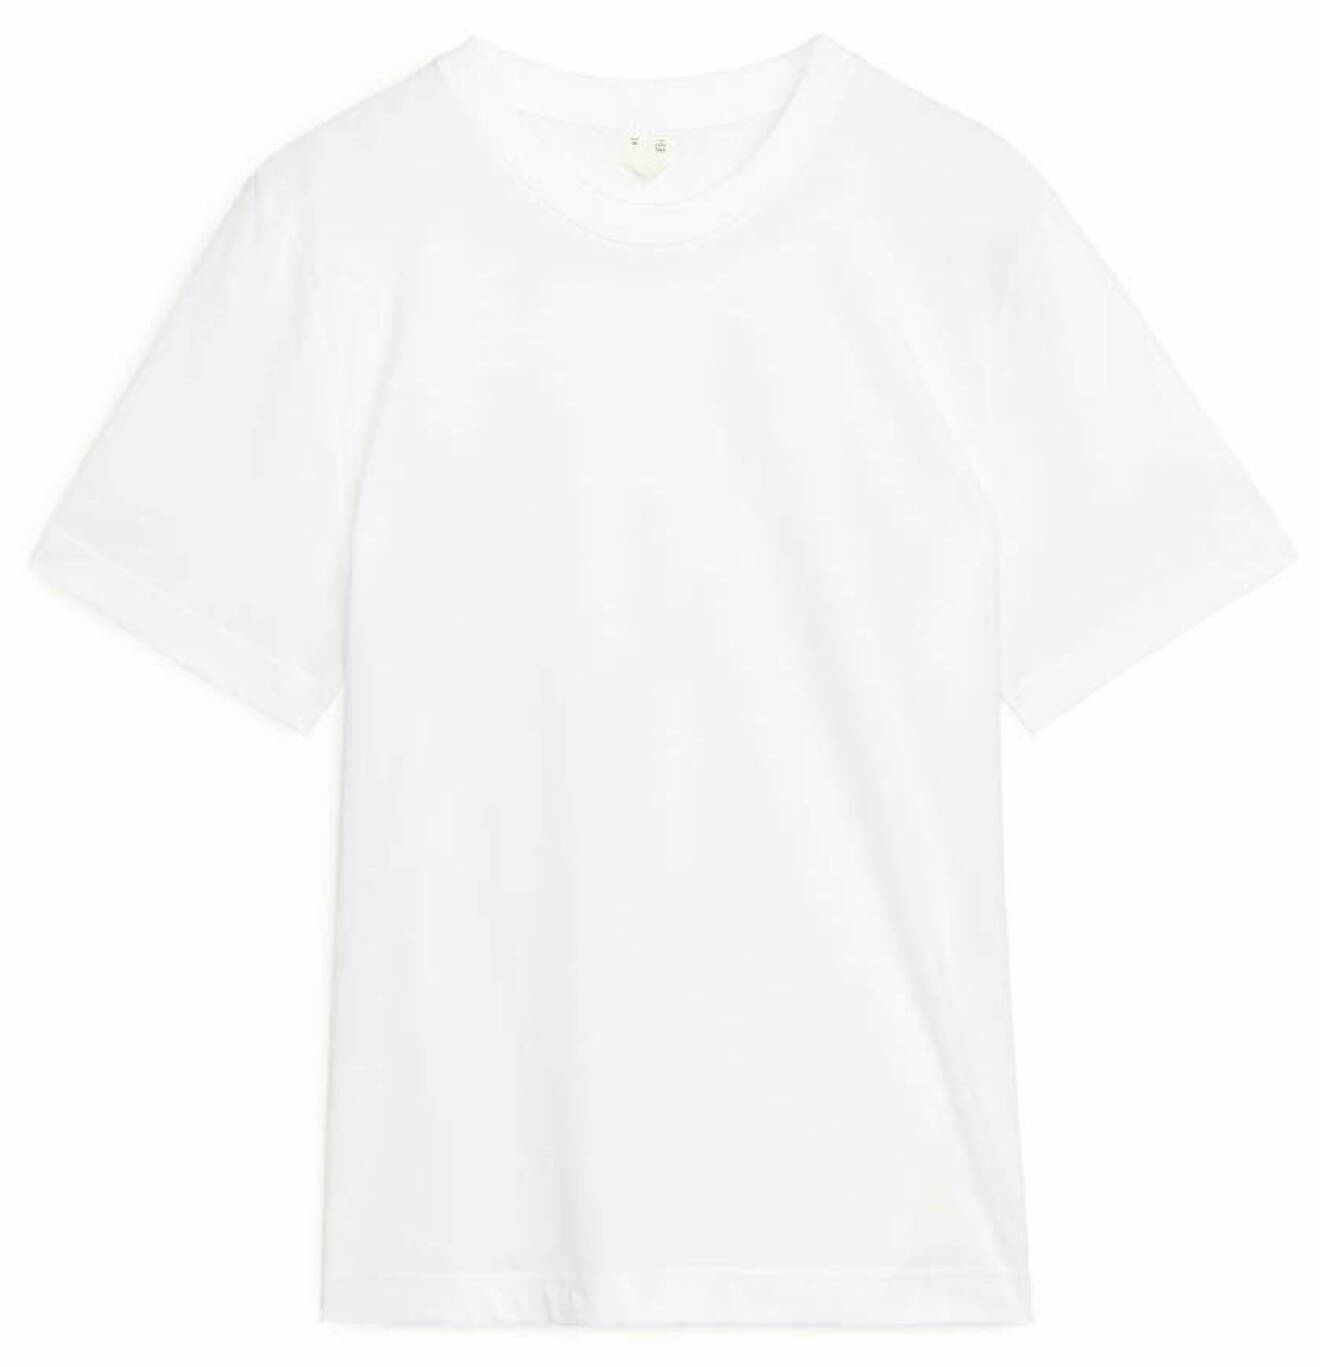 vit t-shirt från arket i vitt.